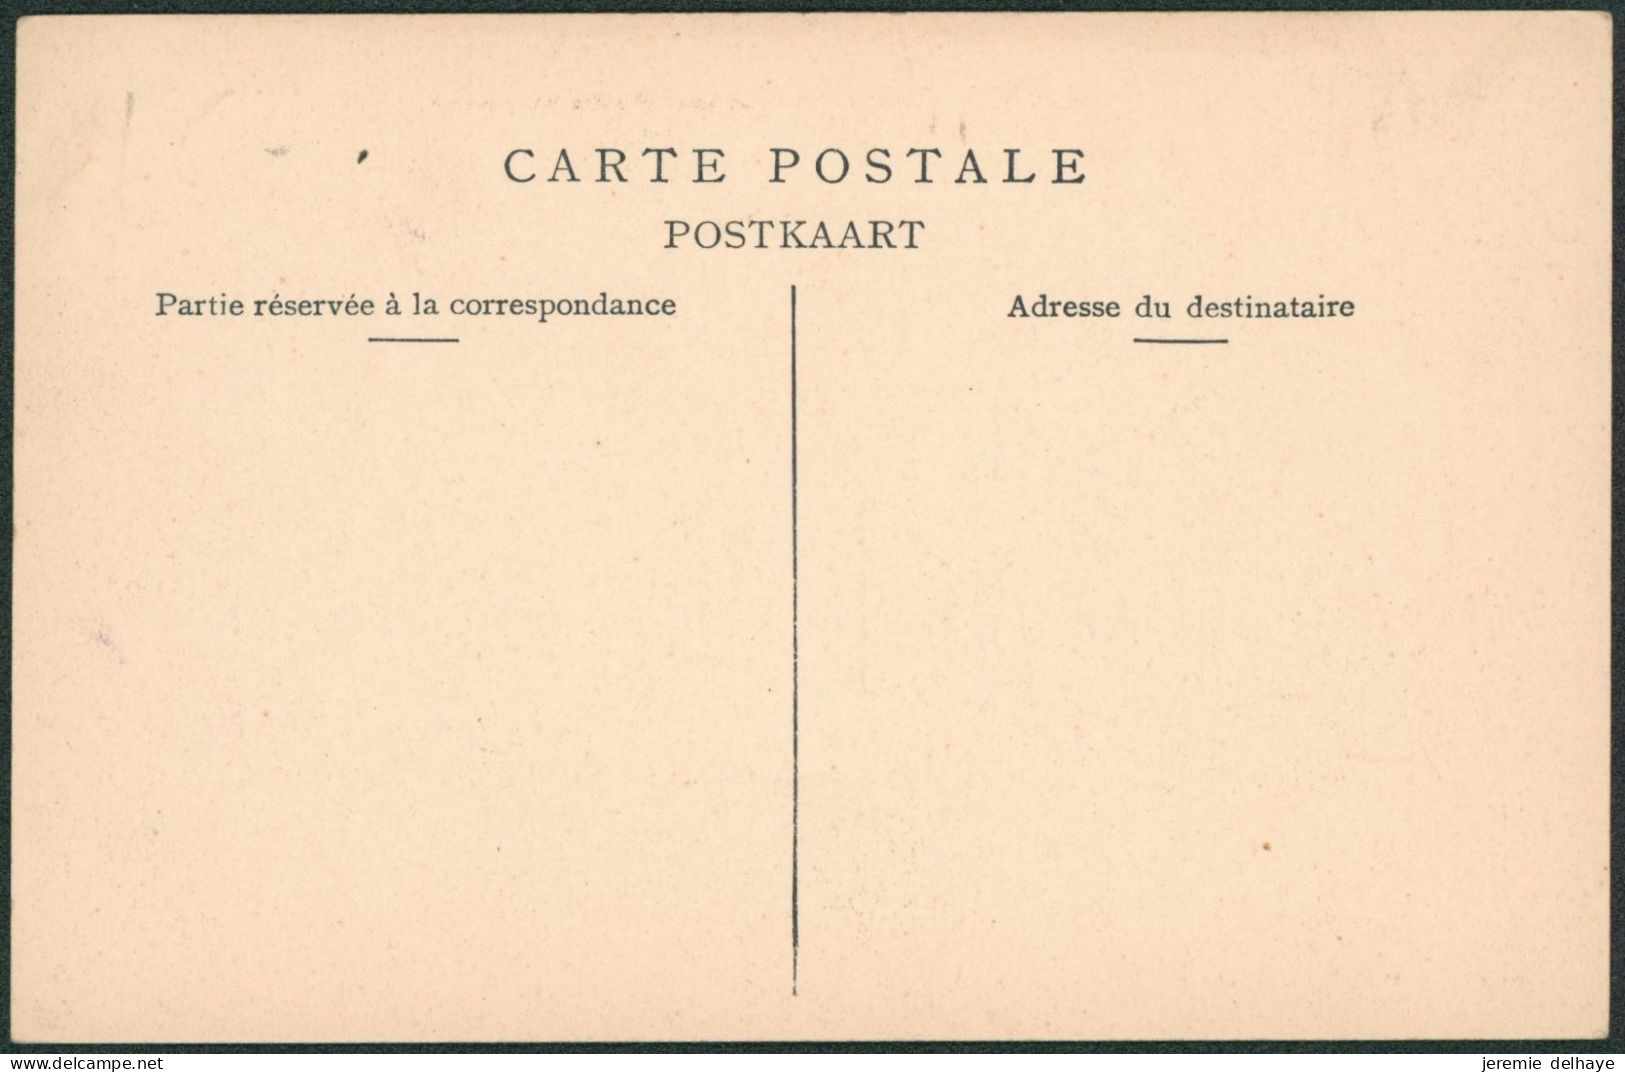 Carte Postale - Nivelles : Place Saint Paul Avec Palais De Justice (n°11, Edit ?) - Nijvel